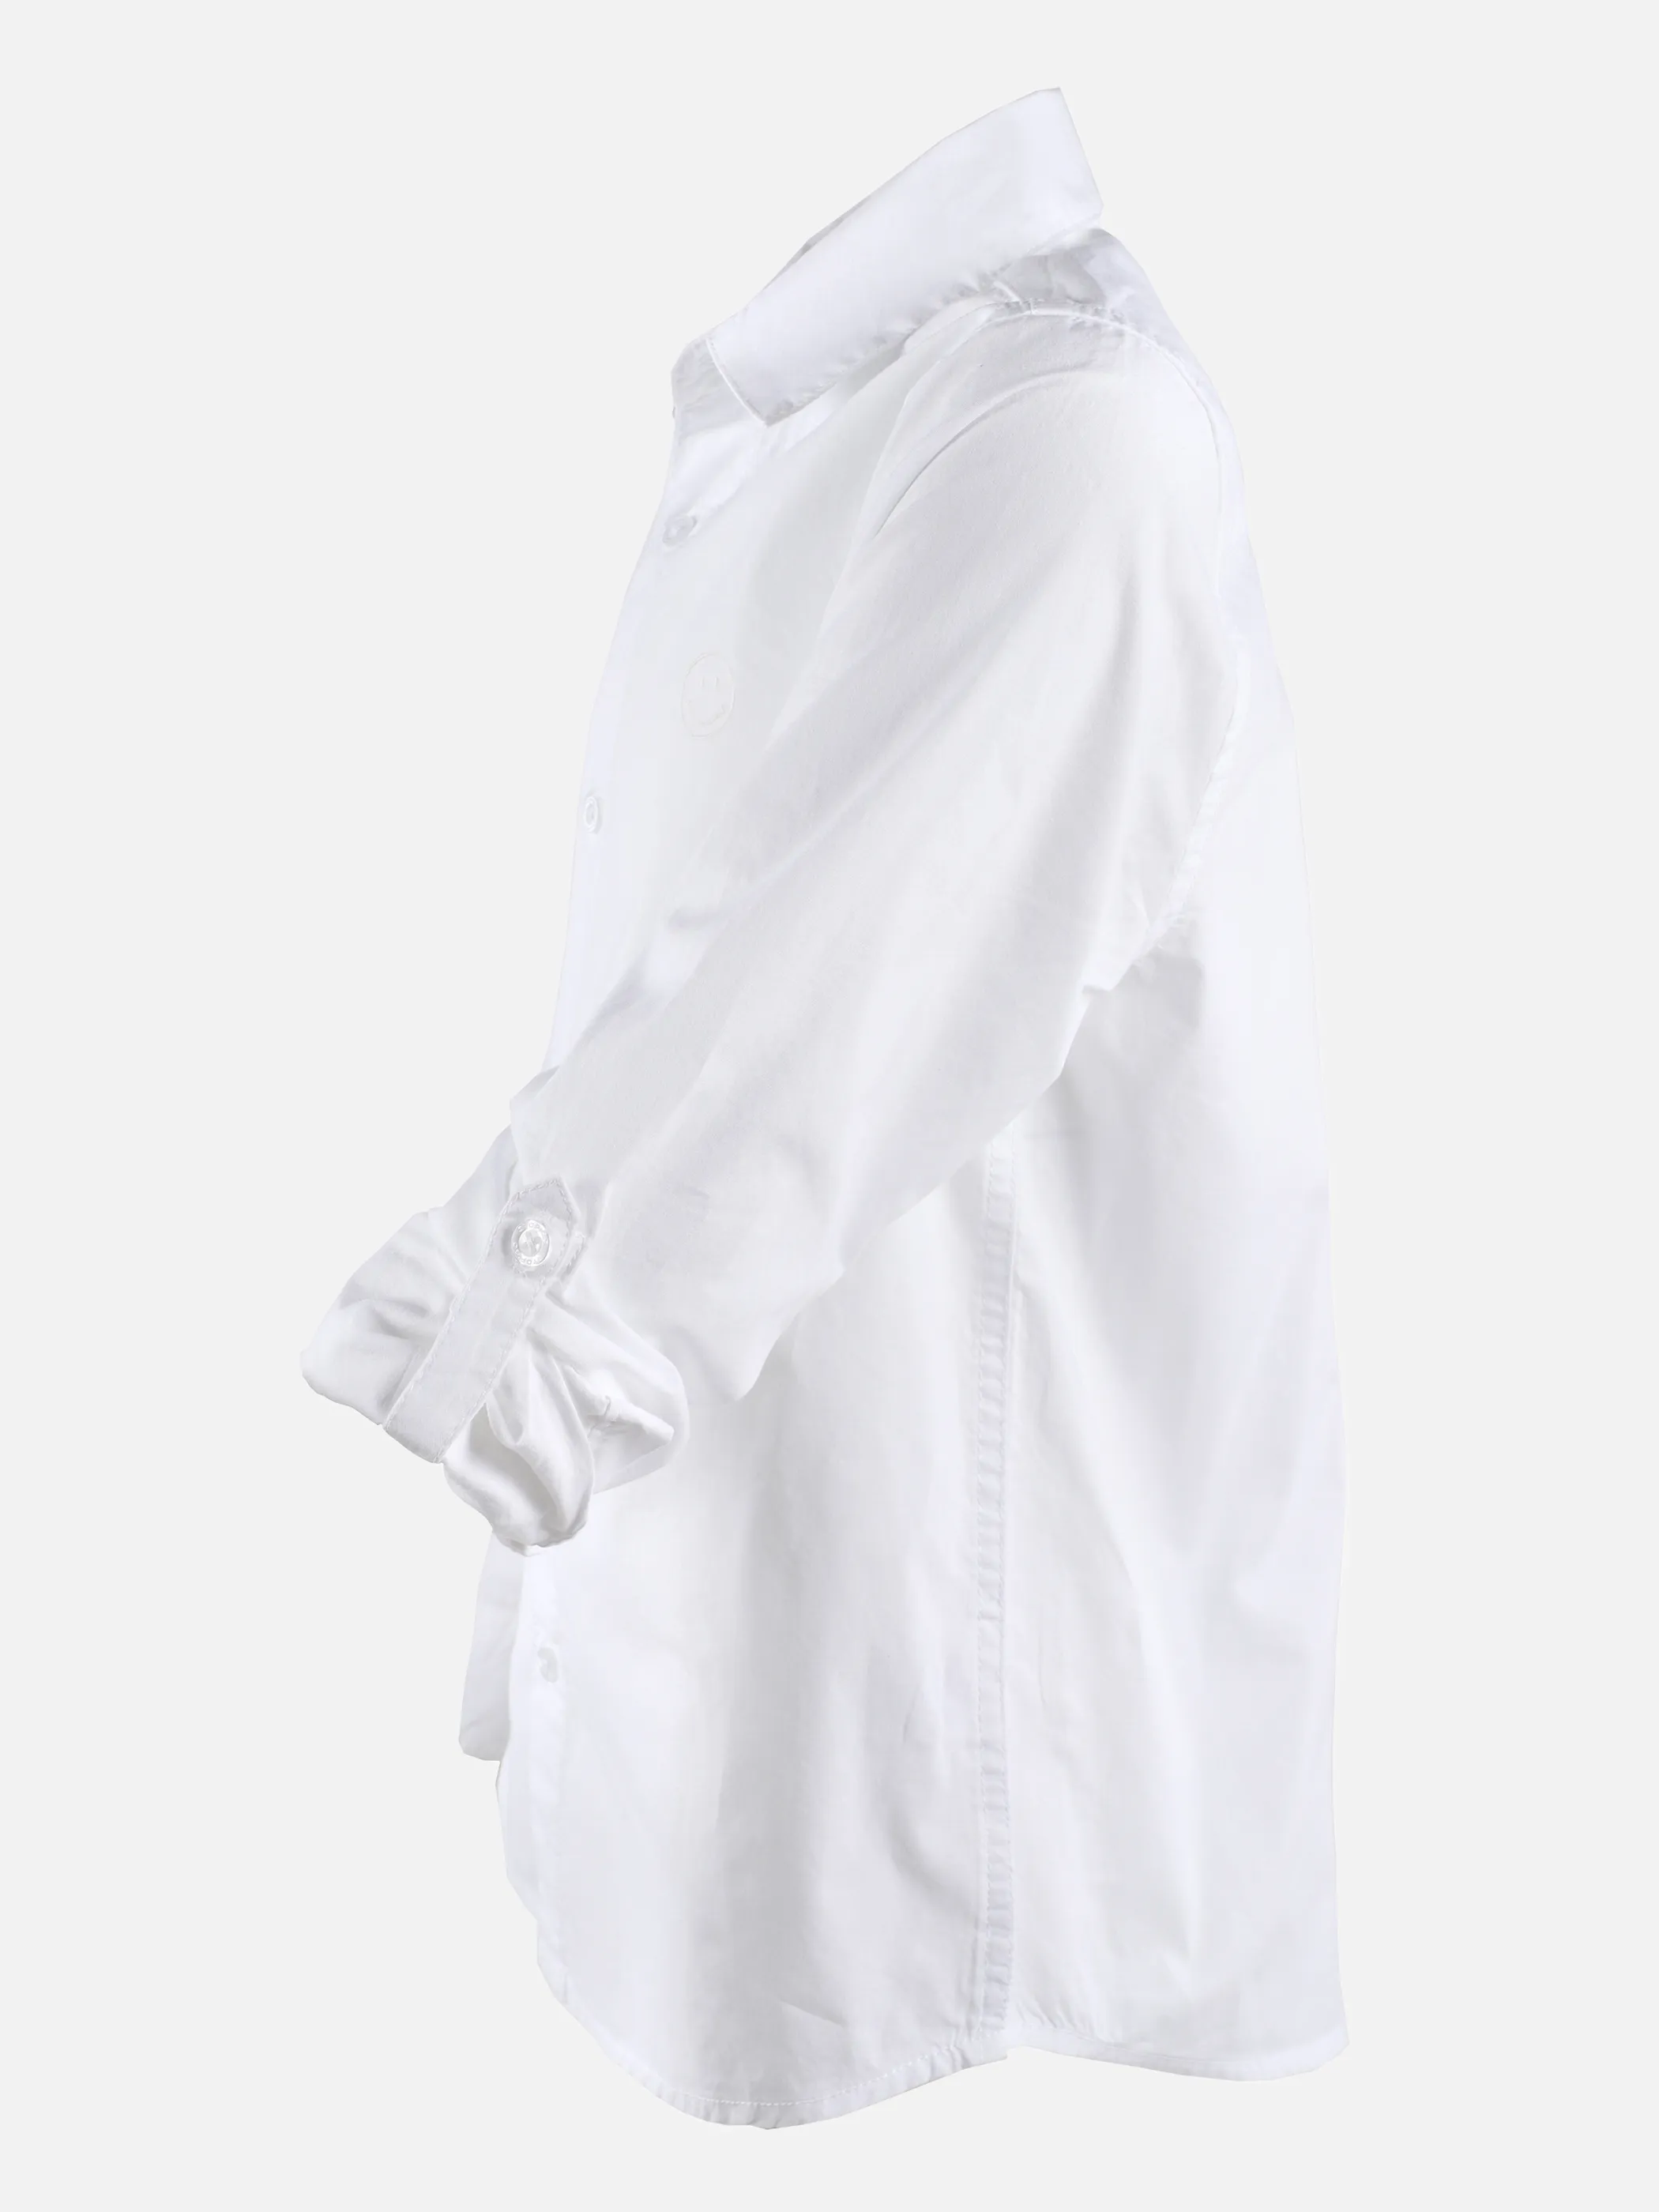 Stop + Go JJ Longsleeve Hemd in weiß mit Stickerei Weiß 875620 WEIß 3